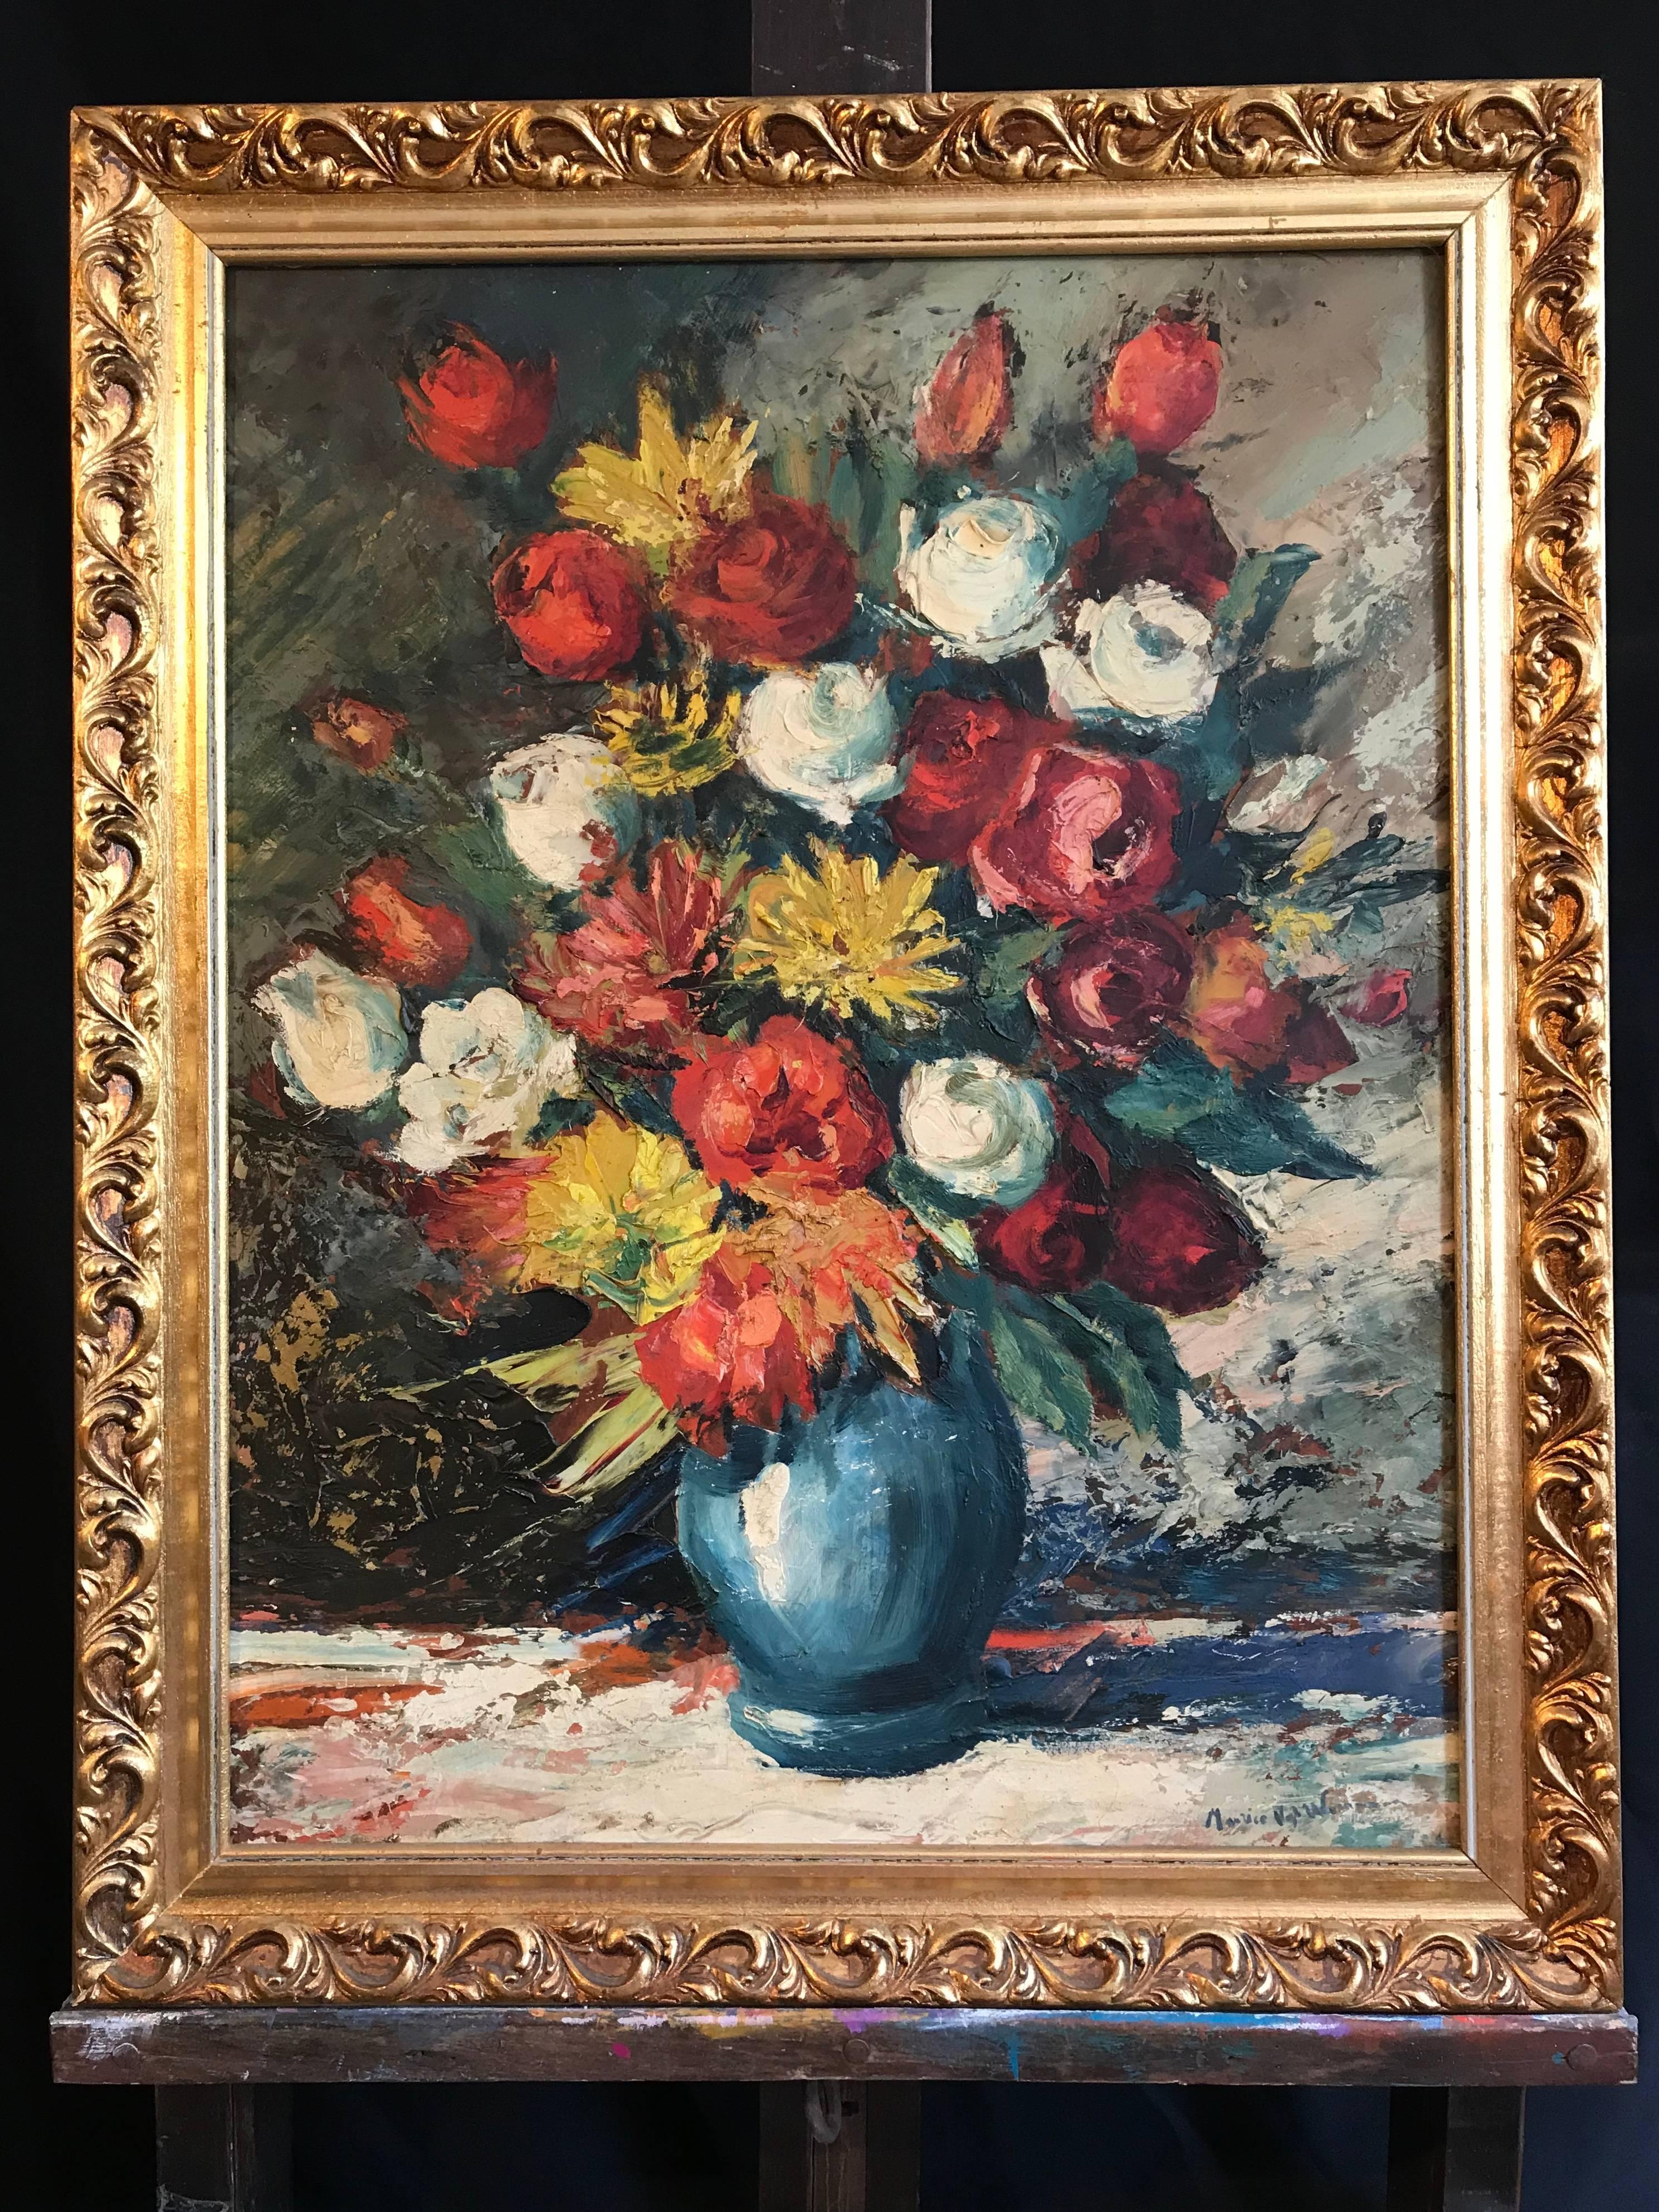 Großes Blumenstrauß-Stillleben mit Blumen im impressionistischen Ölstil  (Abstrakter Impressionismus), Painting, von Maurice Vagh-Weinmann